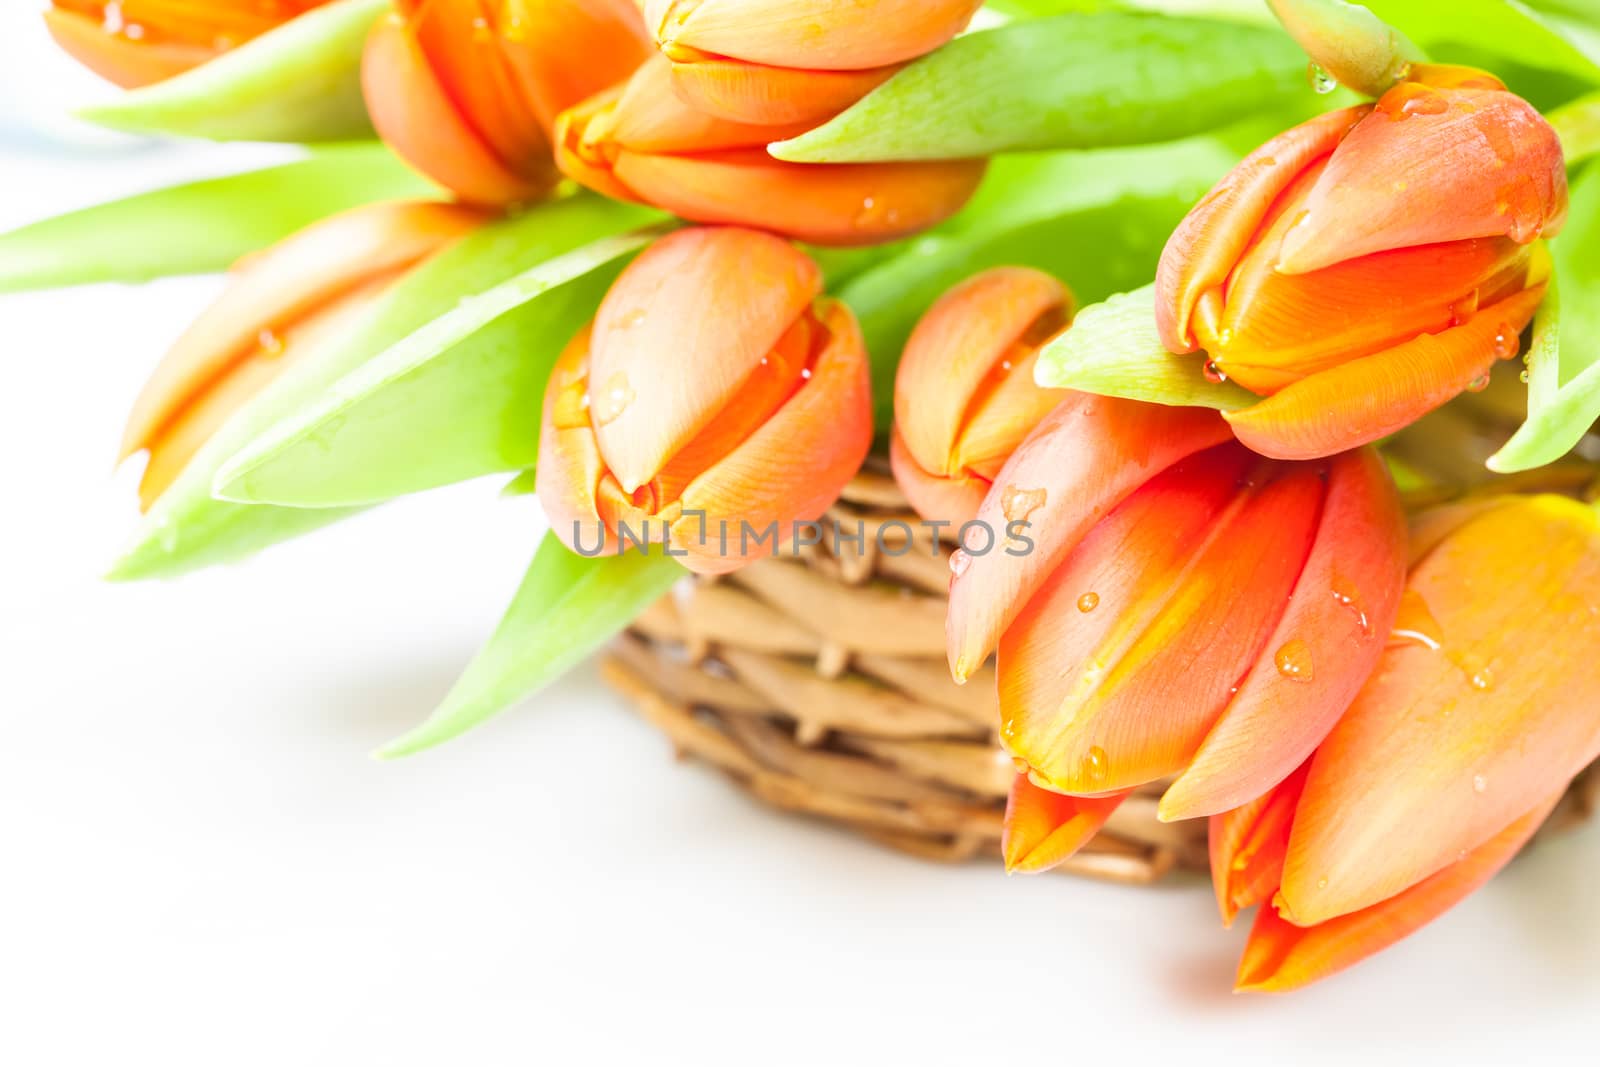 Orange tulips in basket by Slast20